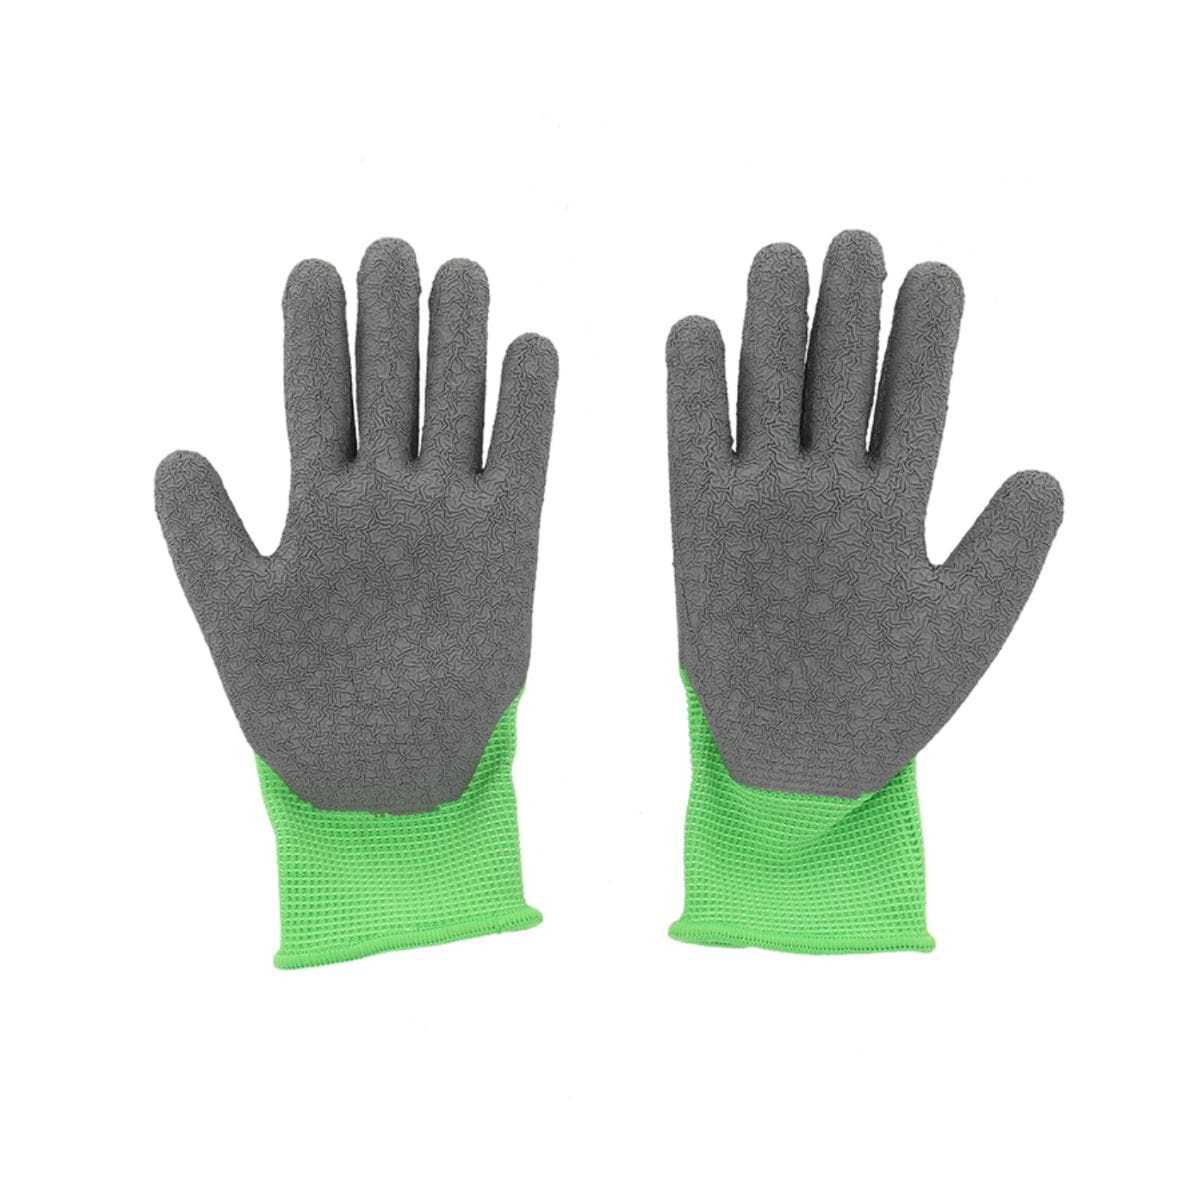 Achetez KAYGO 4 paires de gants de jardinage pour enfants de 3-5